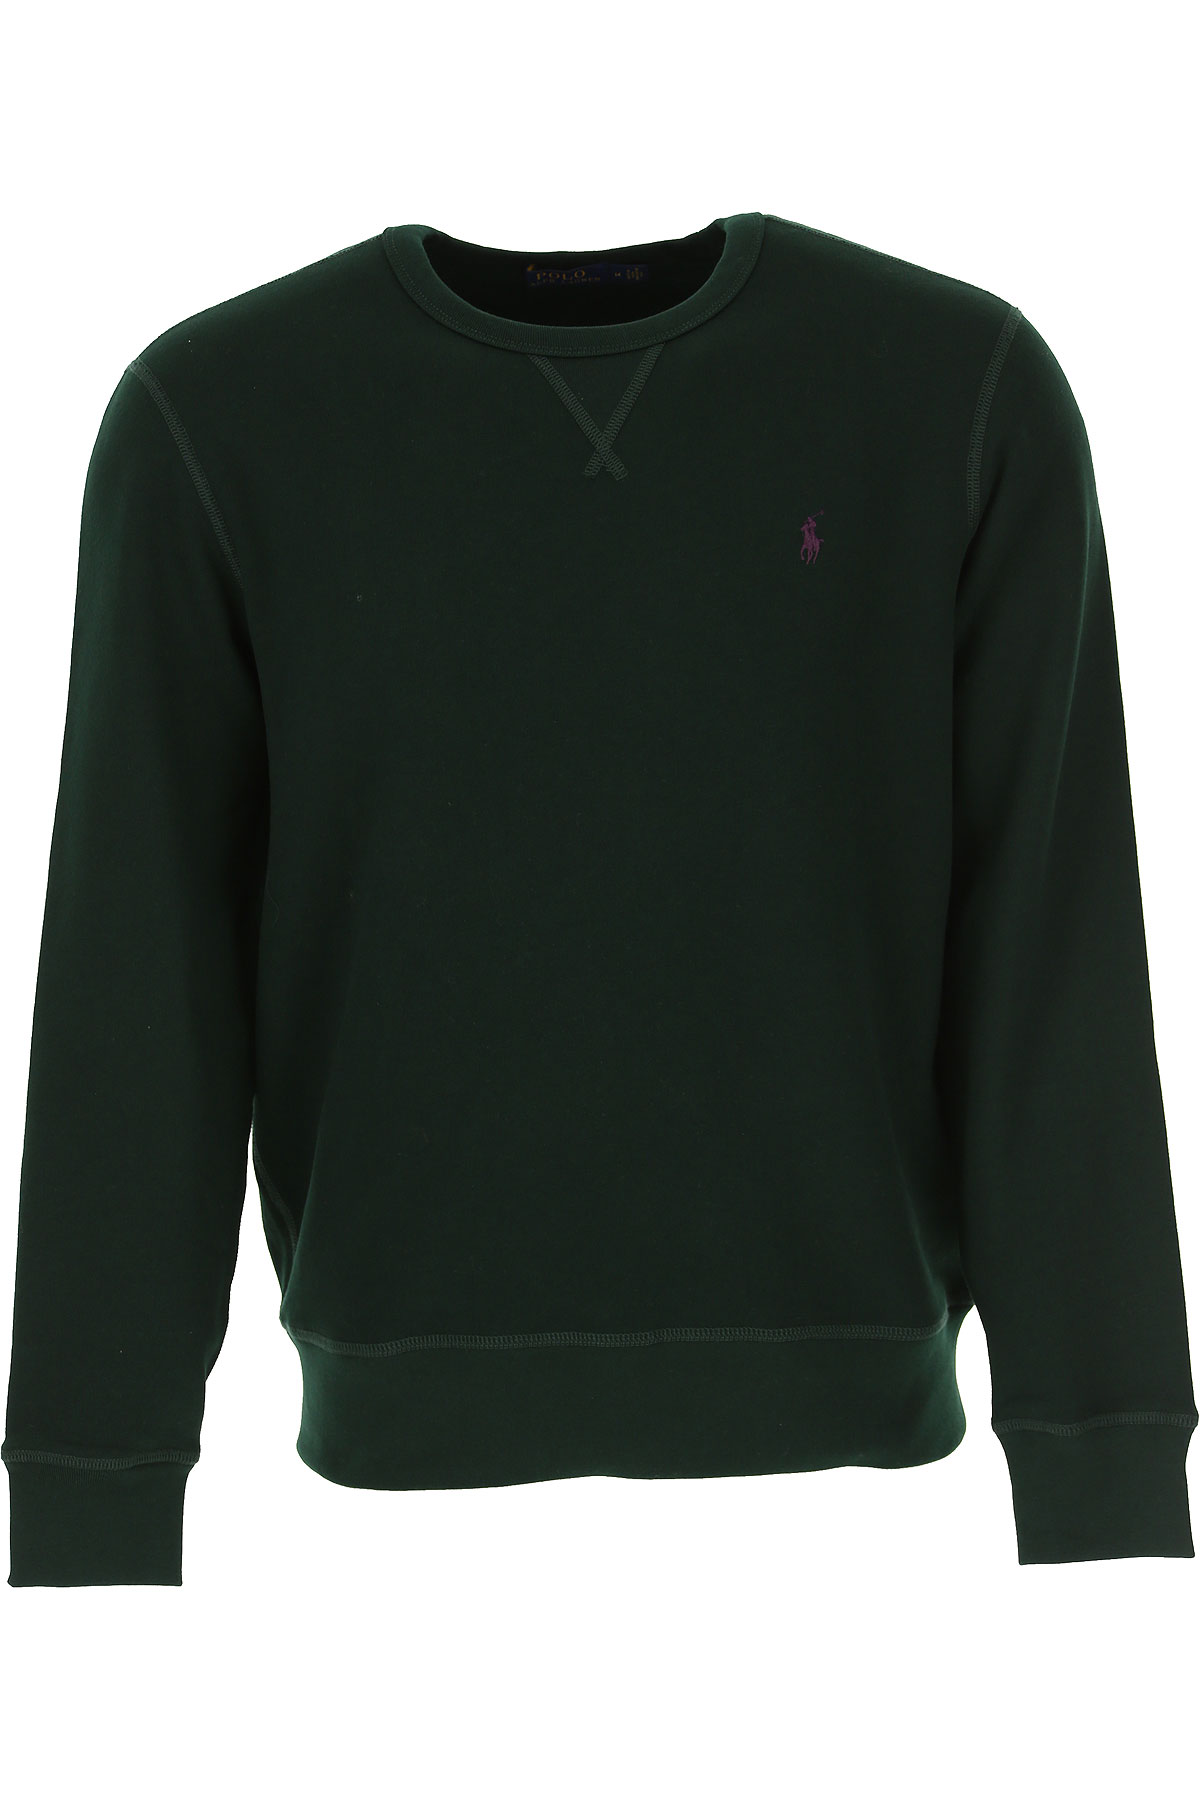 Ralph Lauren Sweatshirt für Herren, Kapuzenpulli, Hoodie, Sweats Günstig im Sale, Waldgrün, Baumwolle, 2017, L M S XL